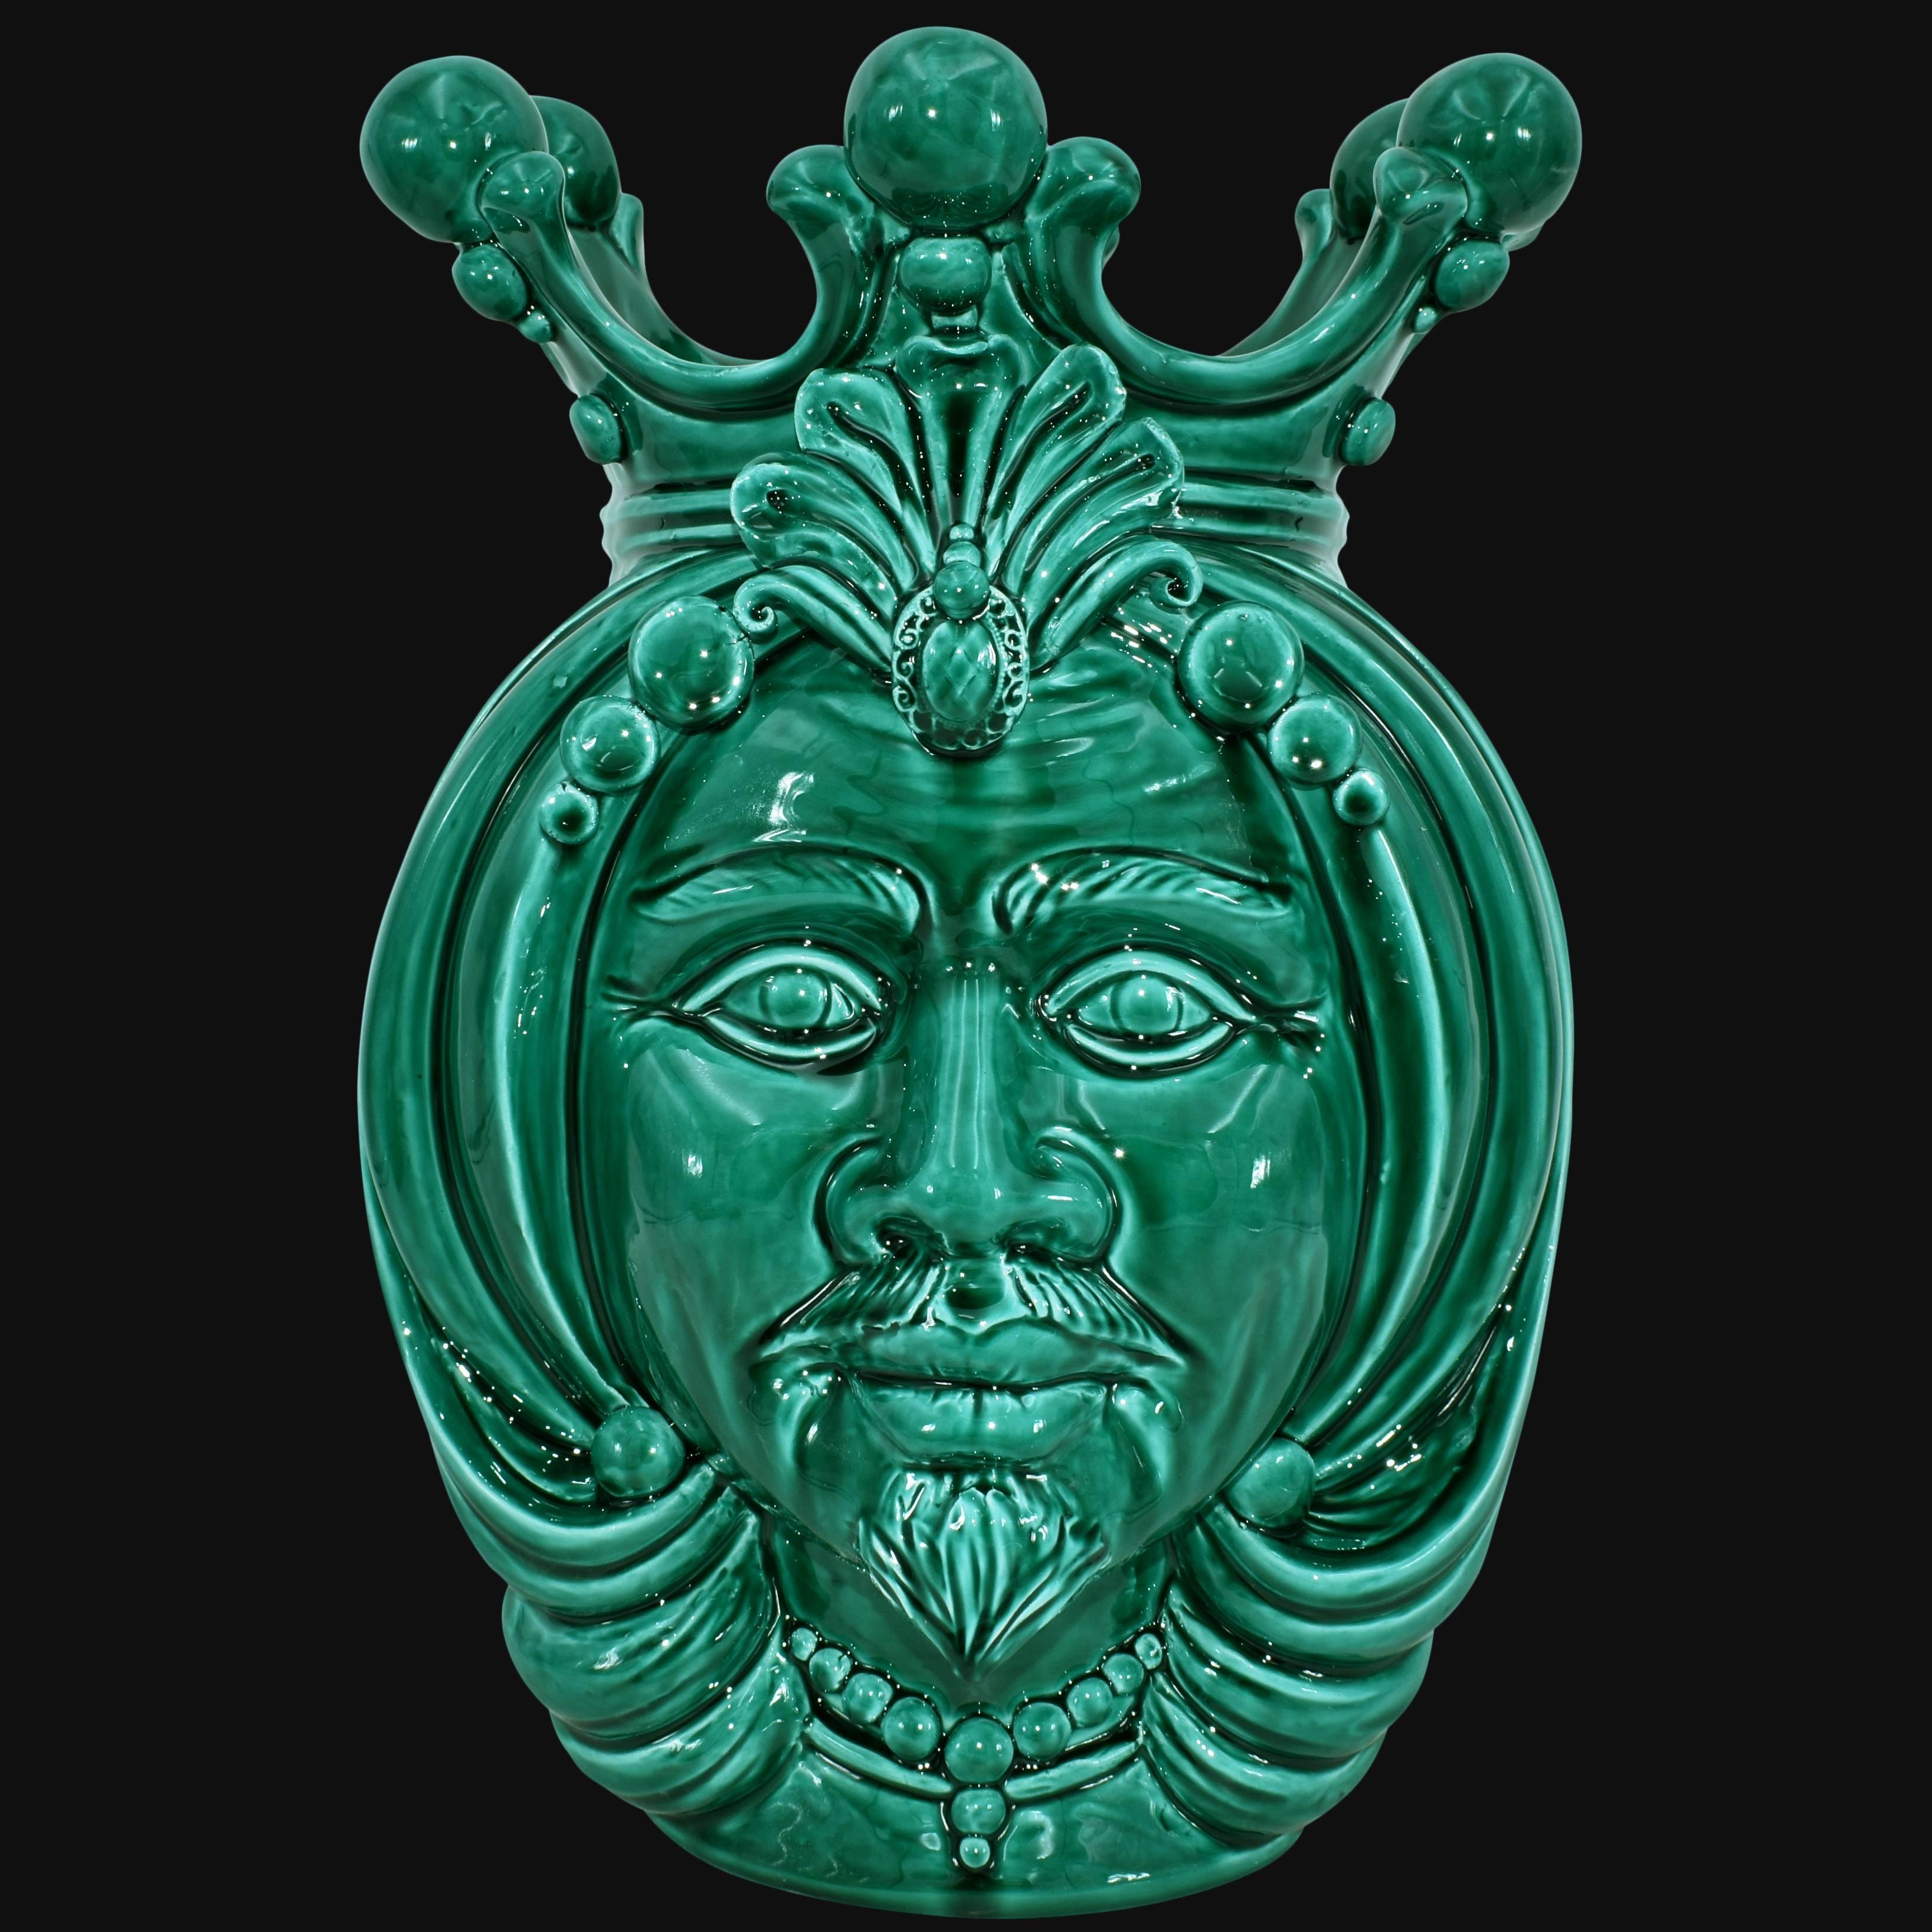 Testa h 38 liscia Verde Smeraldo uomo - Ceramiche di Caltagirone Sofia